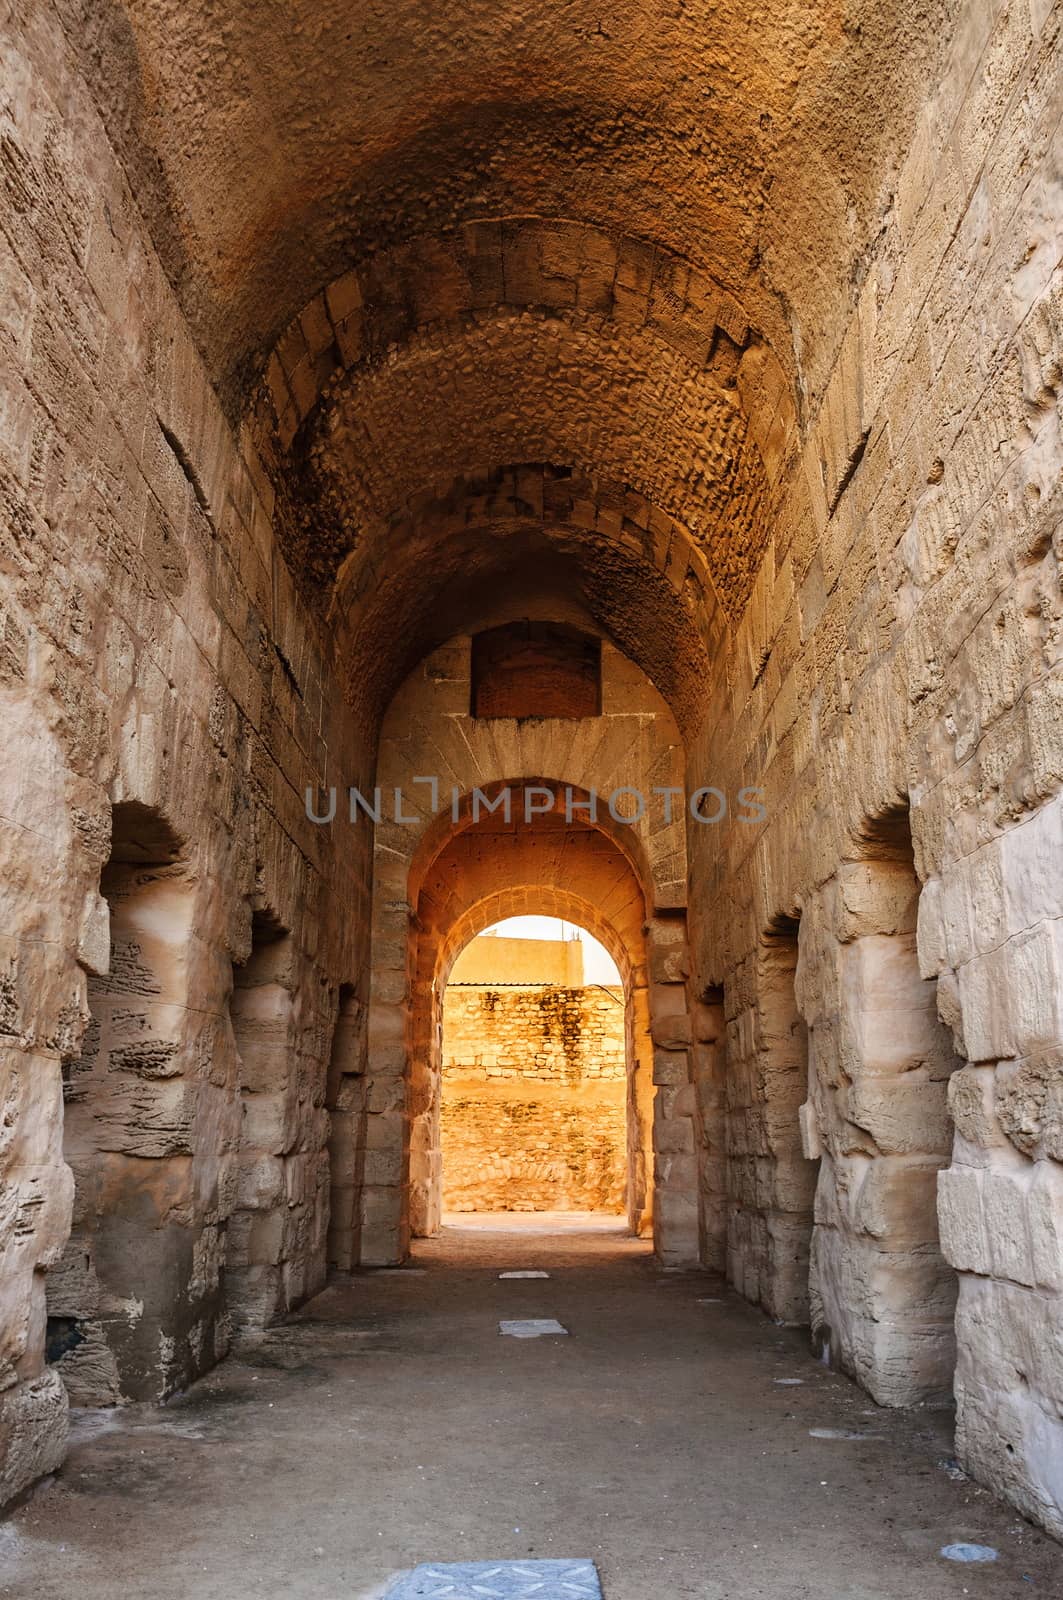 Corridor in ruins of the largest coliseum in North Africa. El Jem,Tunisia, UNESCO.